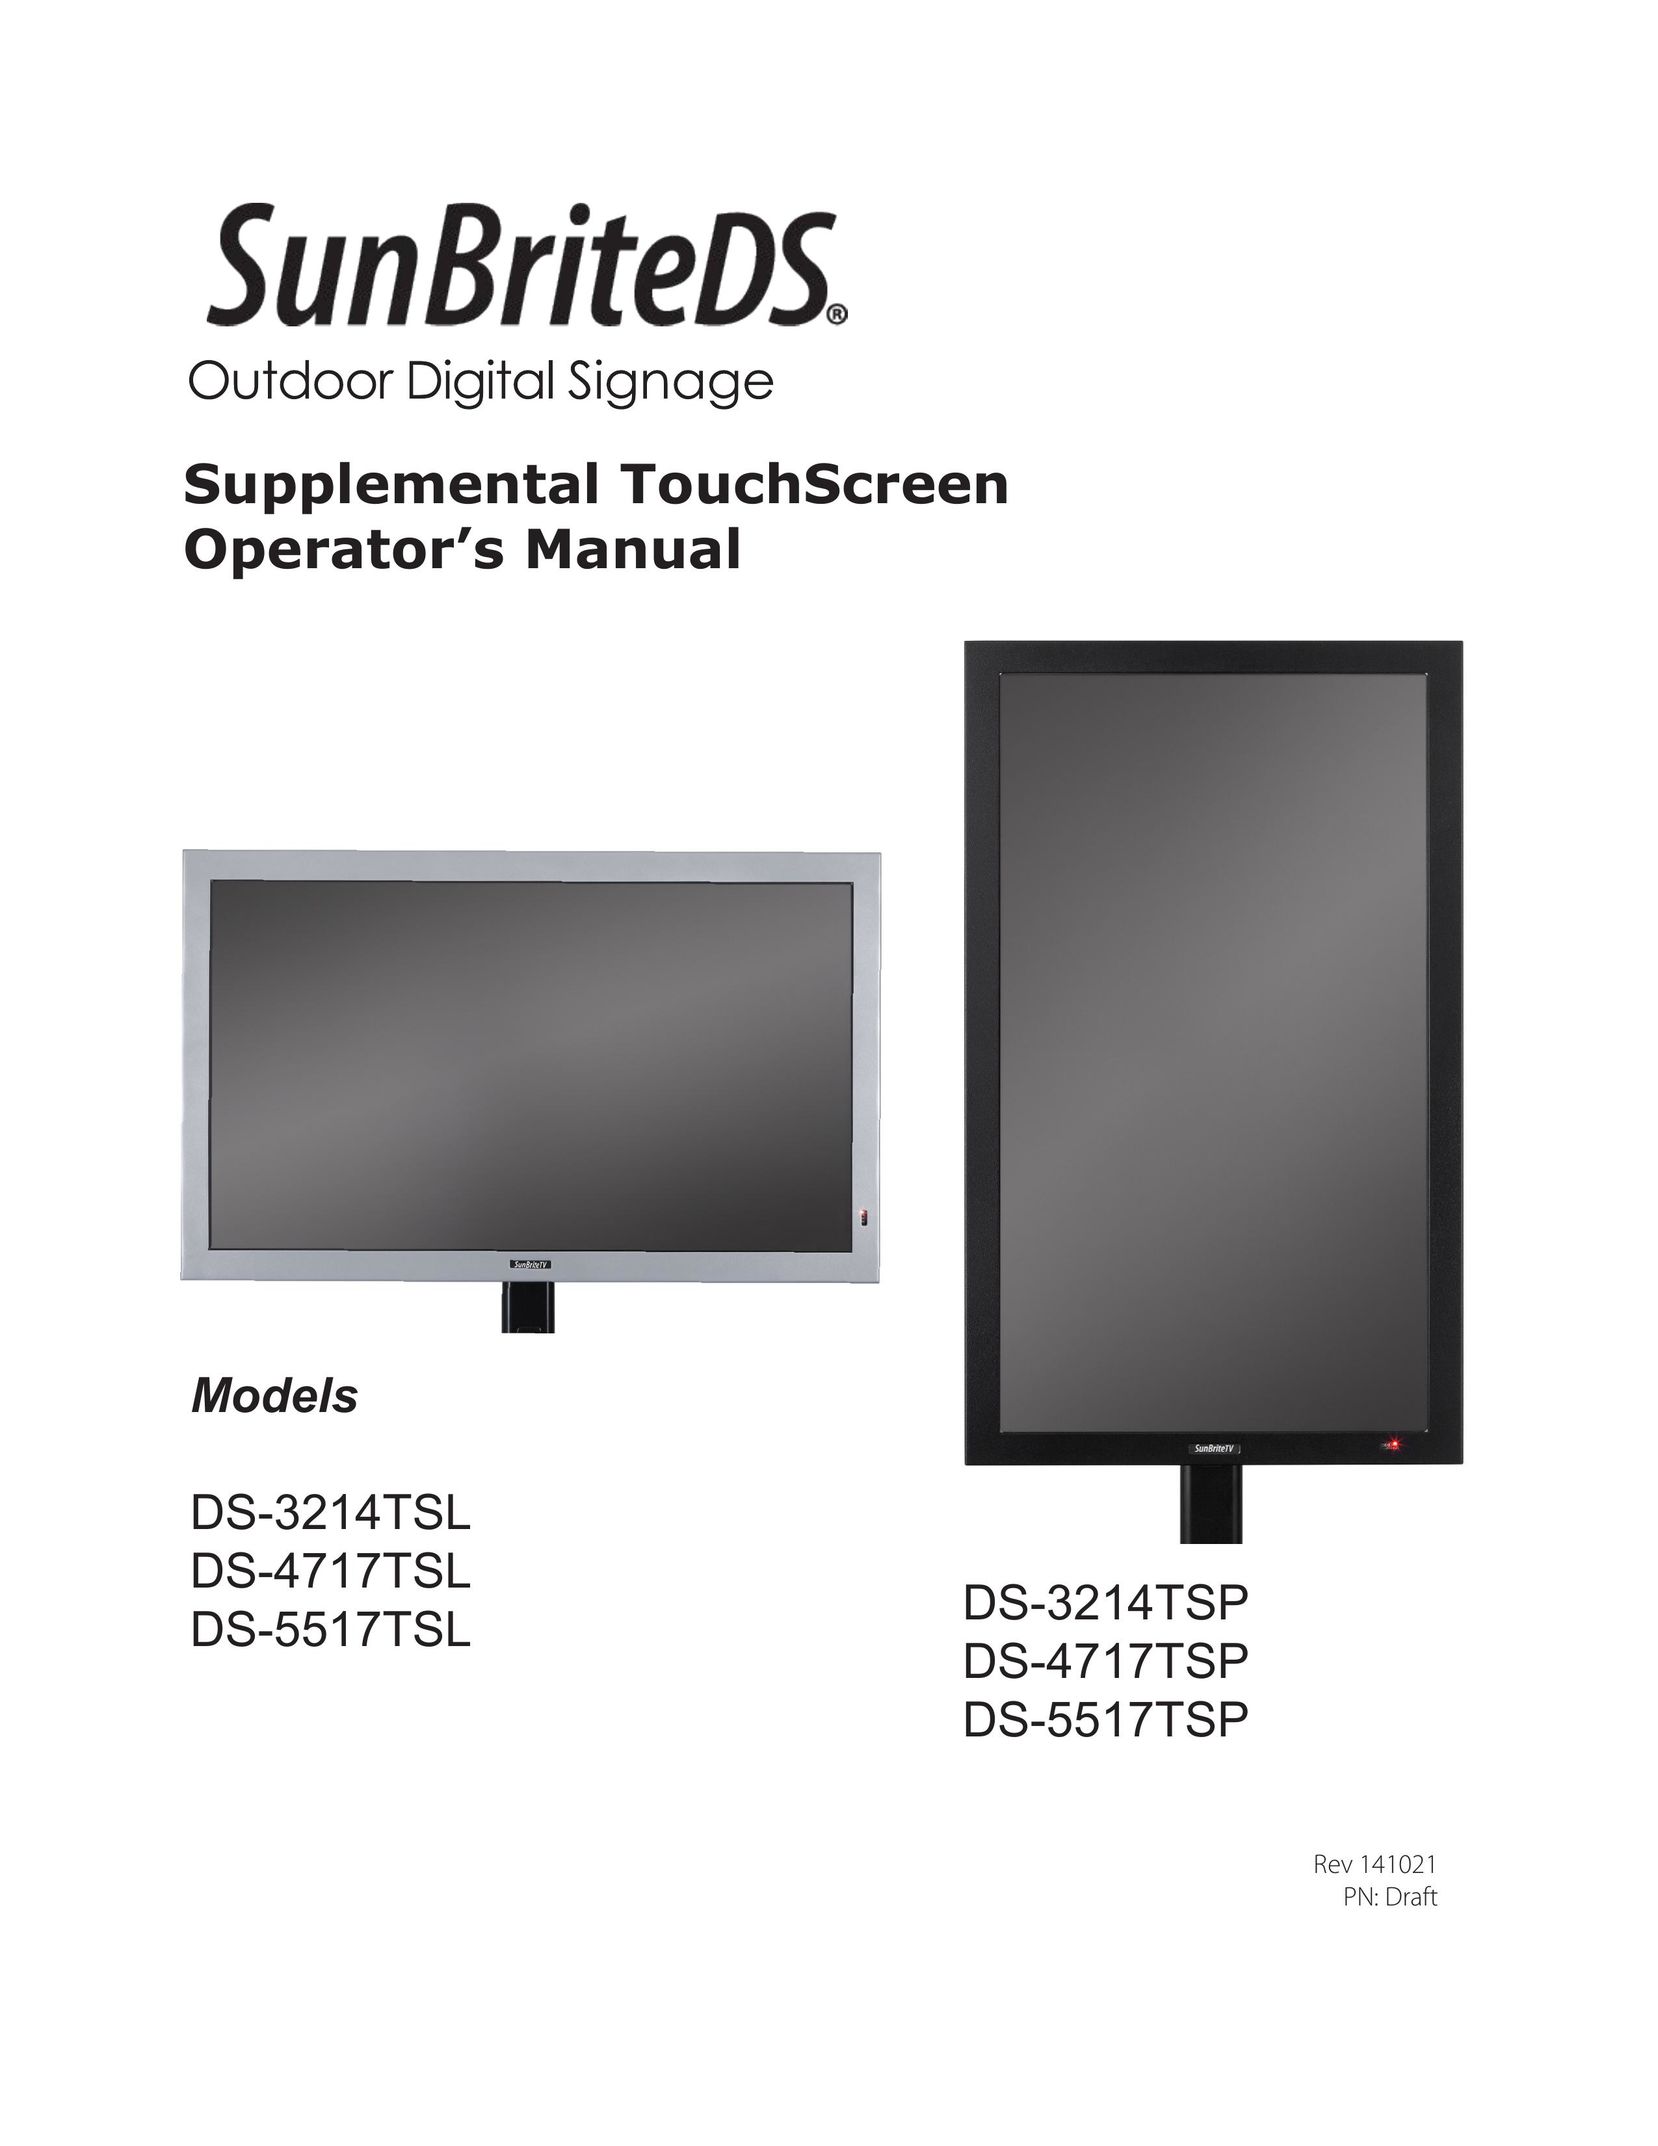 SunBriteTV DS-4717TSL Car Stereo System User Manual